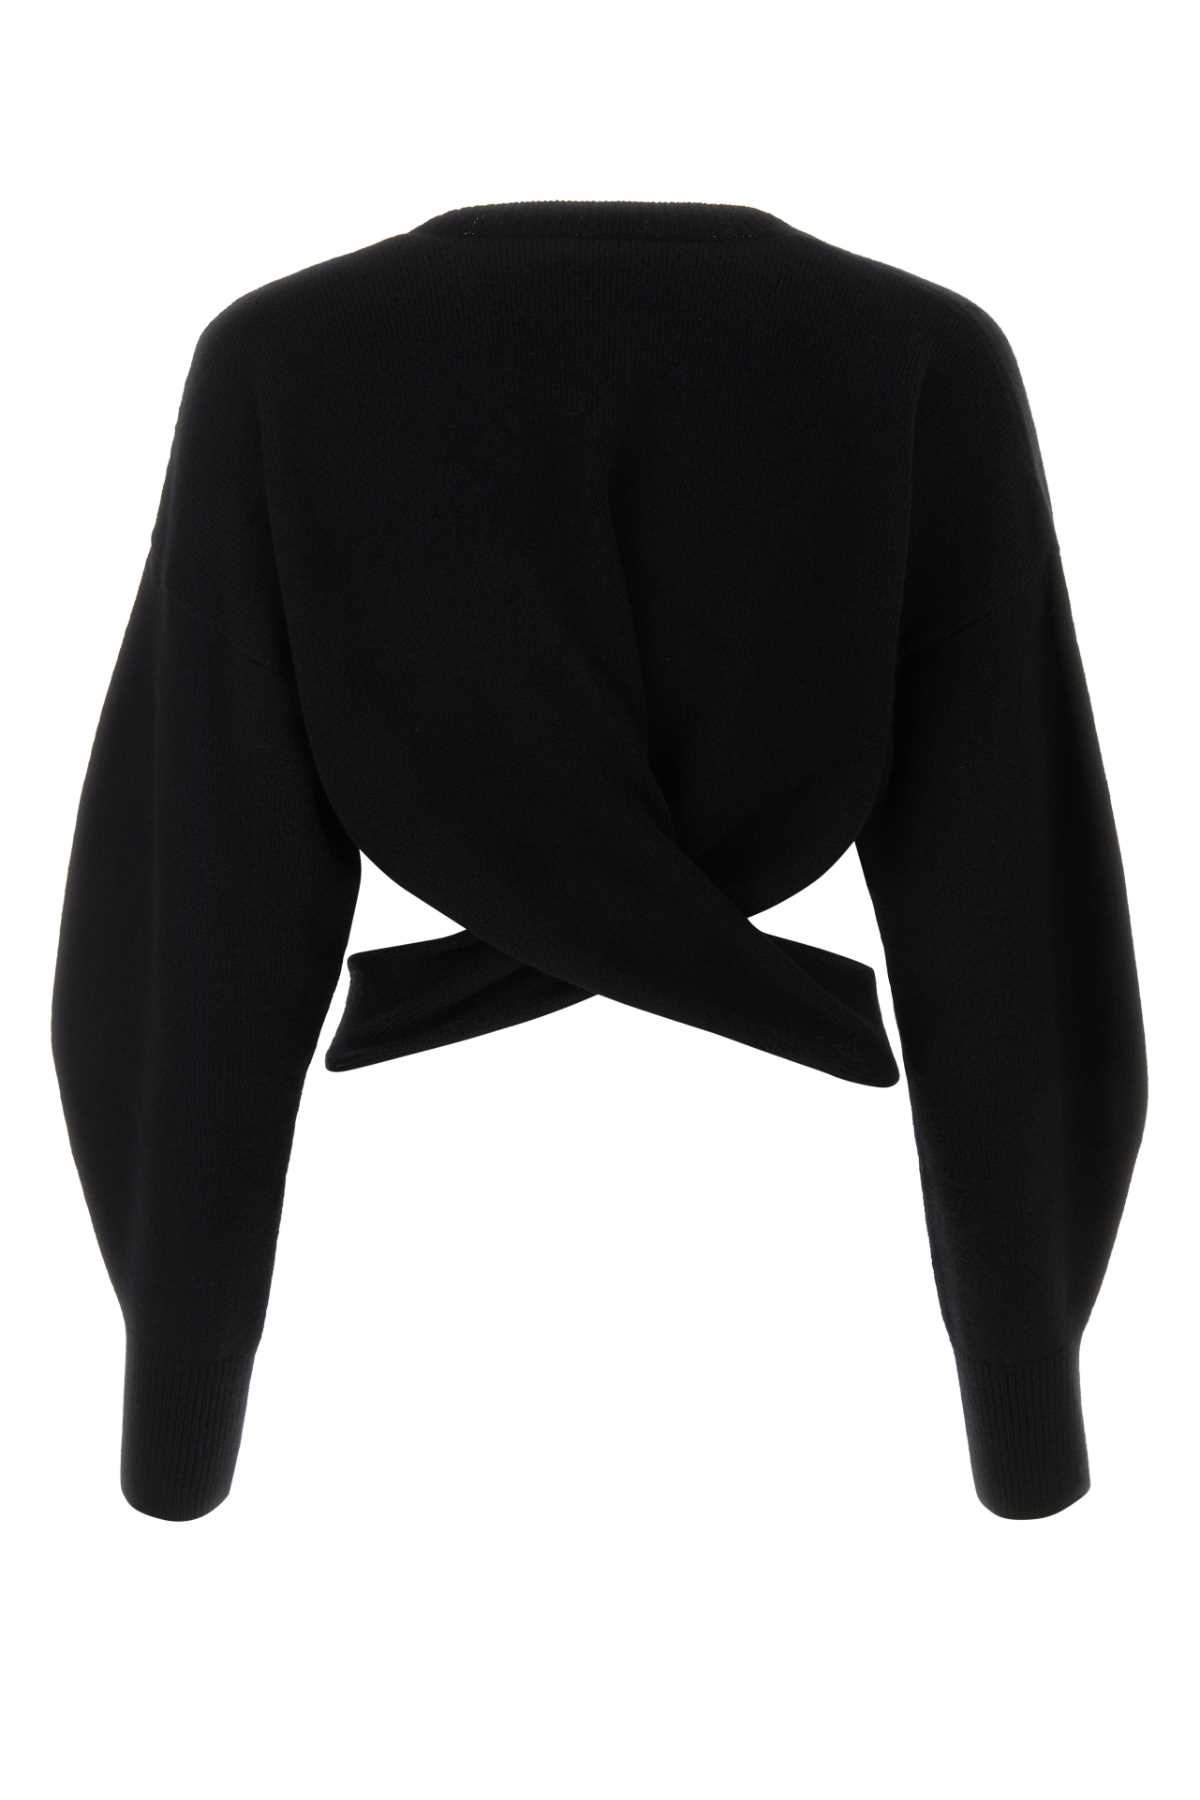 Shop Alexander Mcqueen Black Wool Blend Sweater